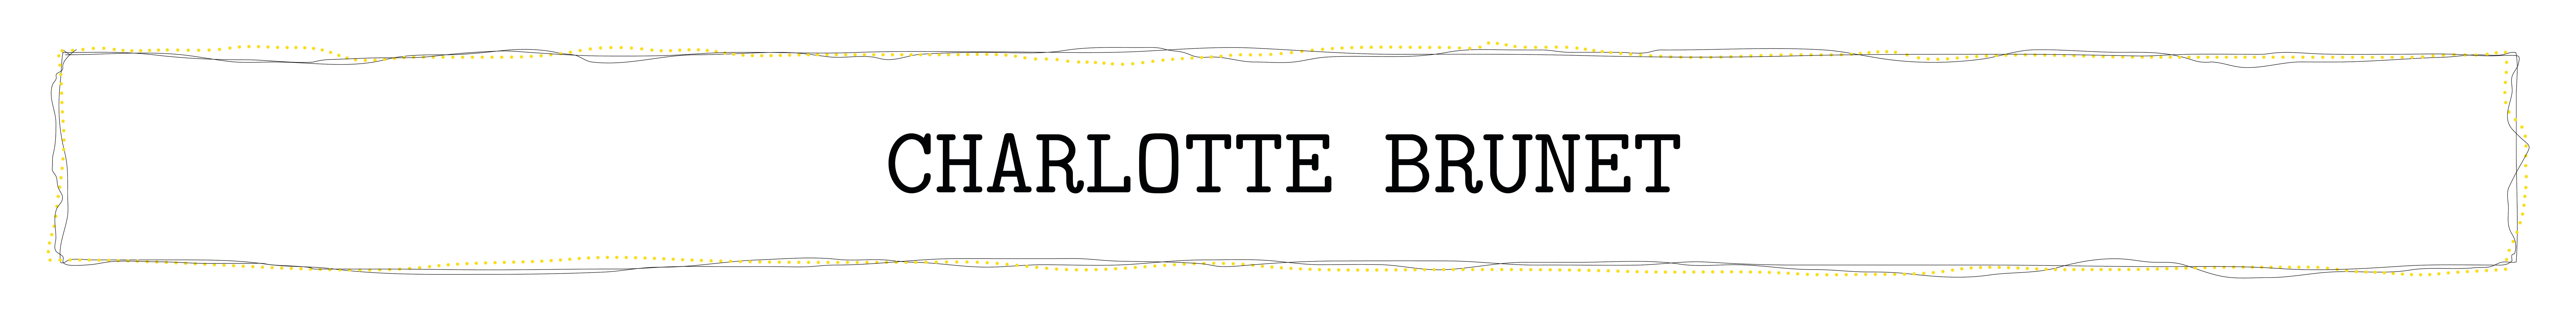 charlotte brunet's profile banner